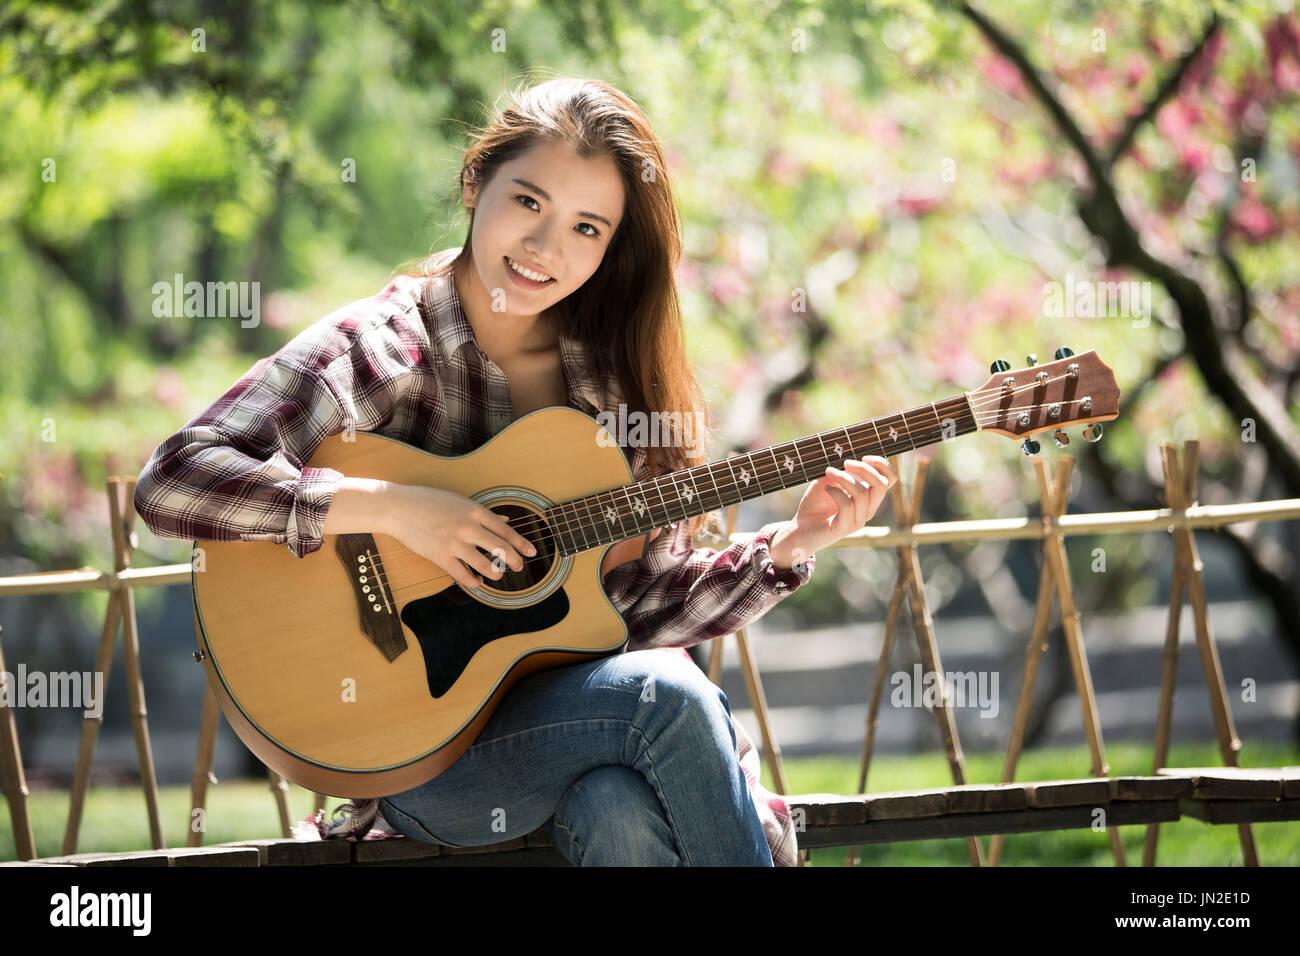 Las mujeres jóvenes tocando la guitarra Foto de stock